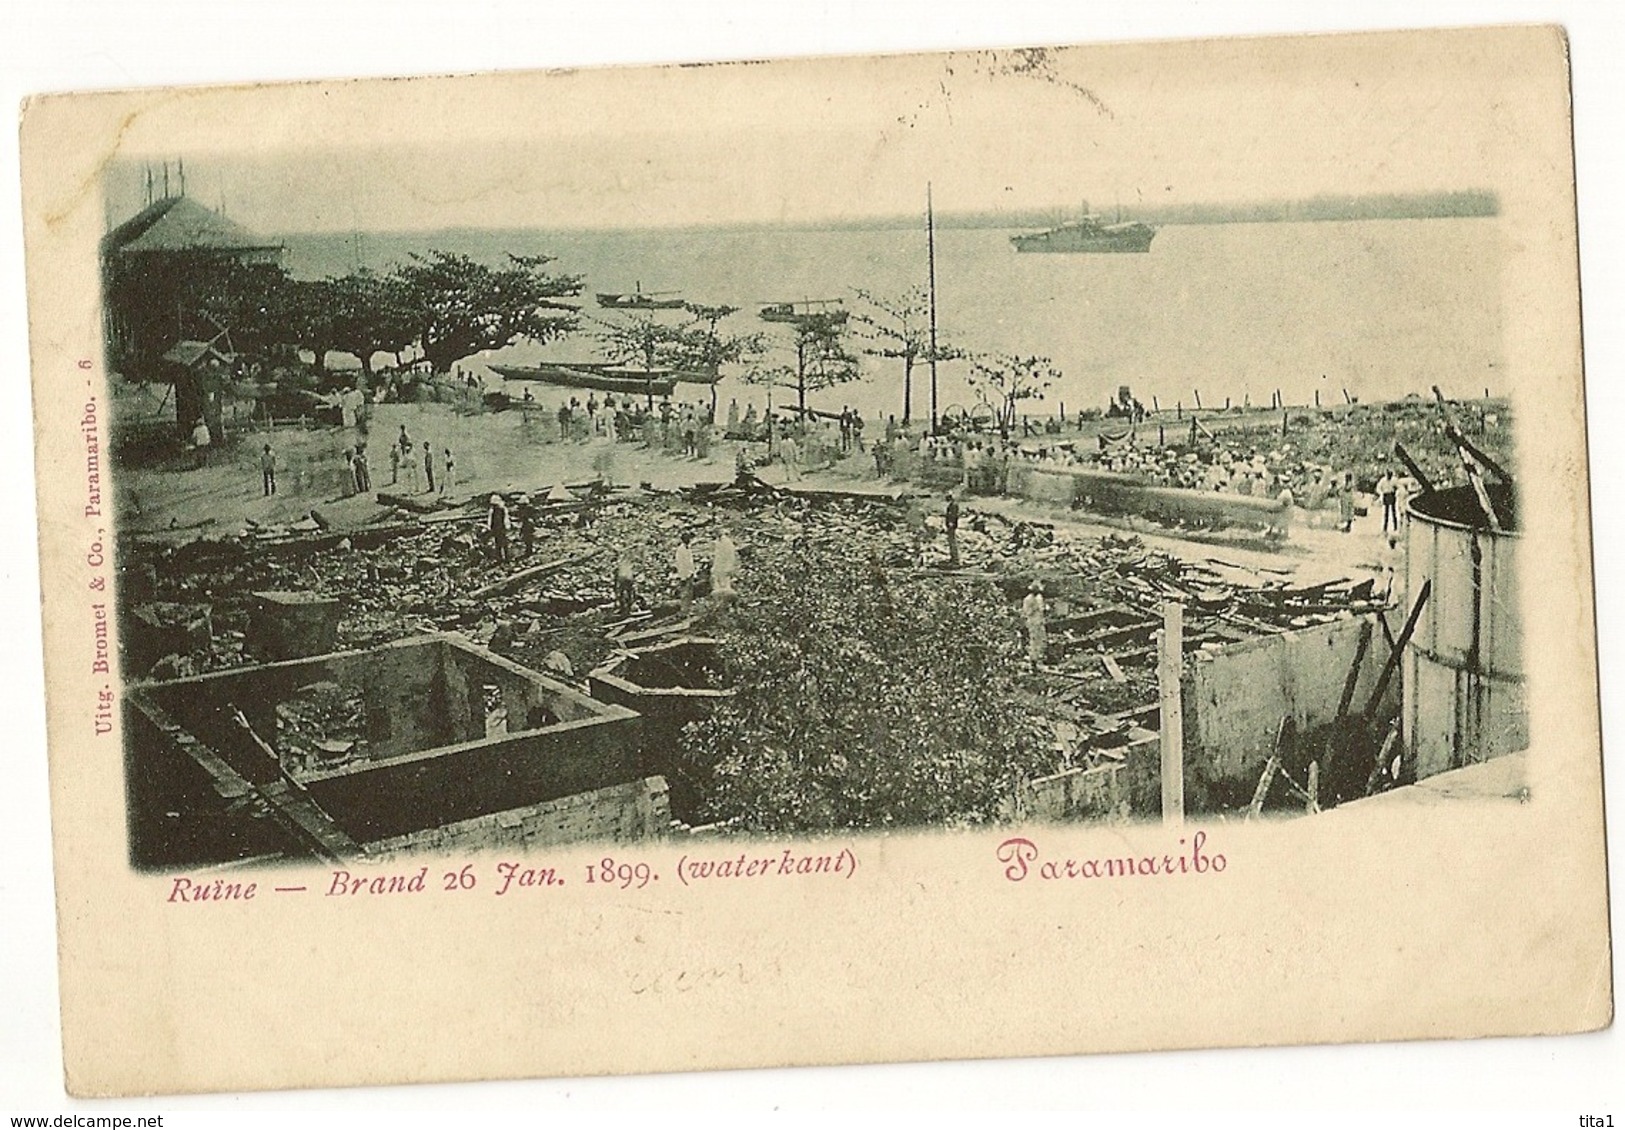 S7704  - Paramaribo - Ruine - Brand 26 Jan. 1899 - Surinam